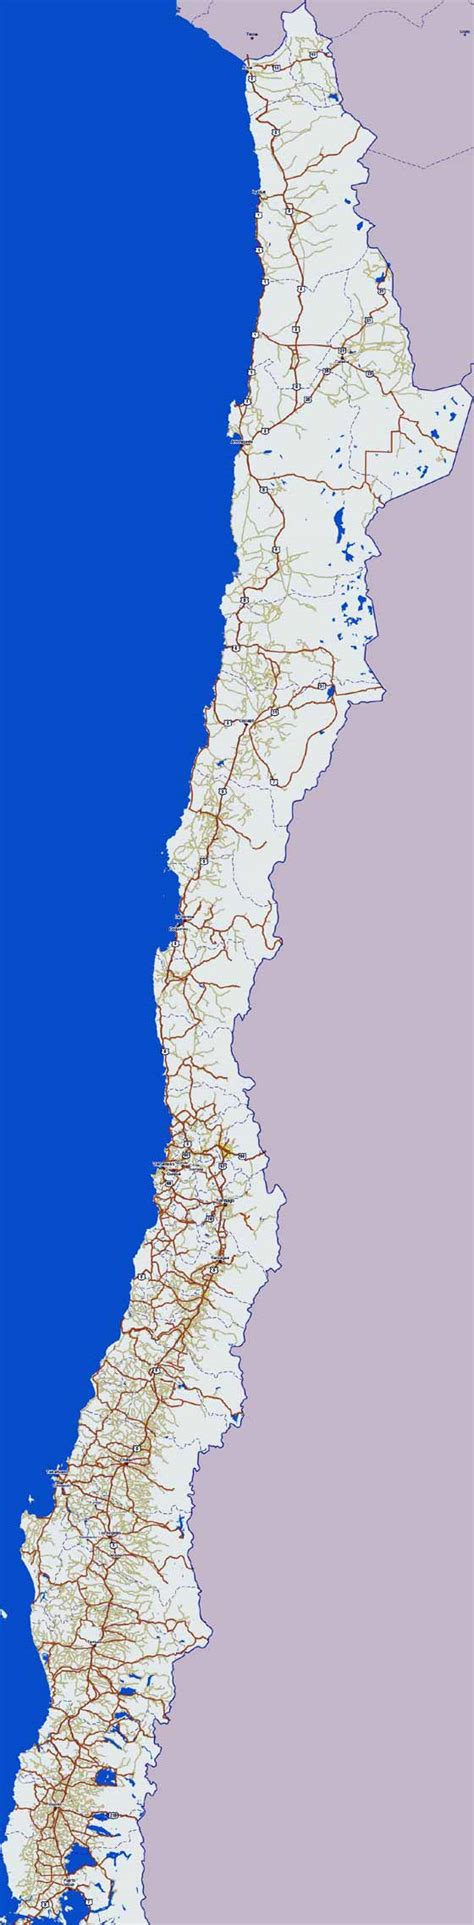 Mapas Imprimidos De Chile Con Posibilidad De Descargar